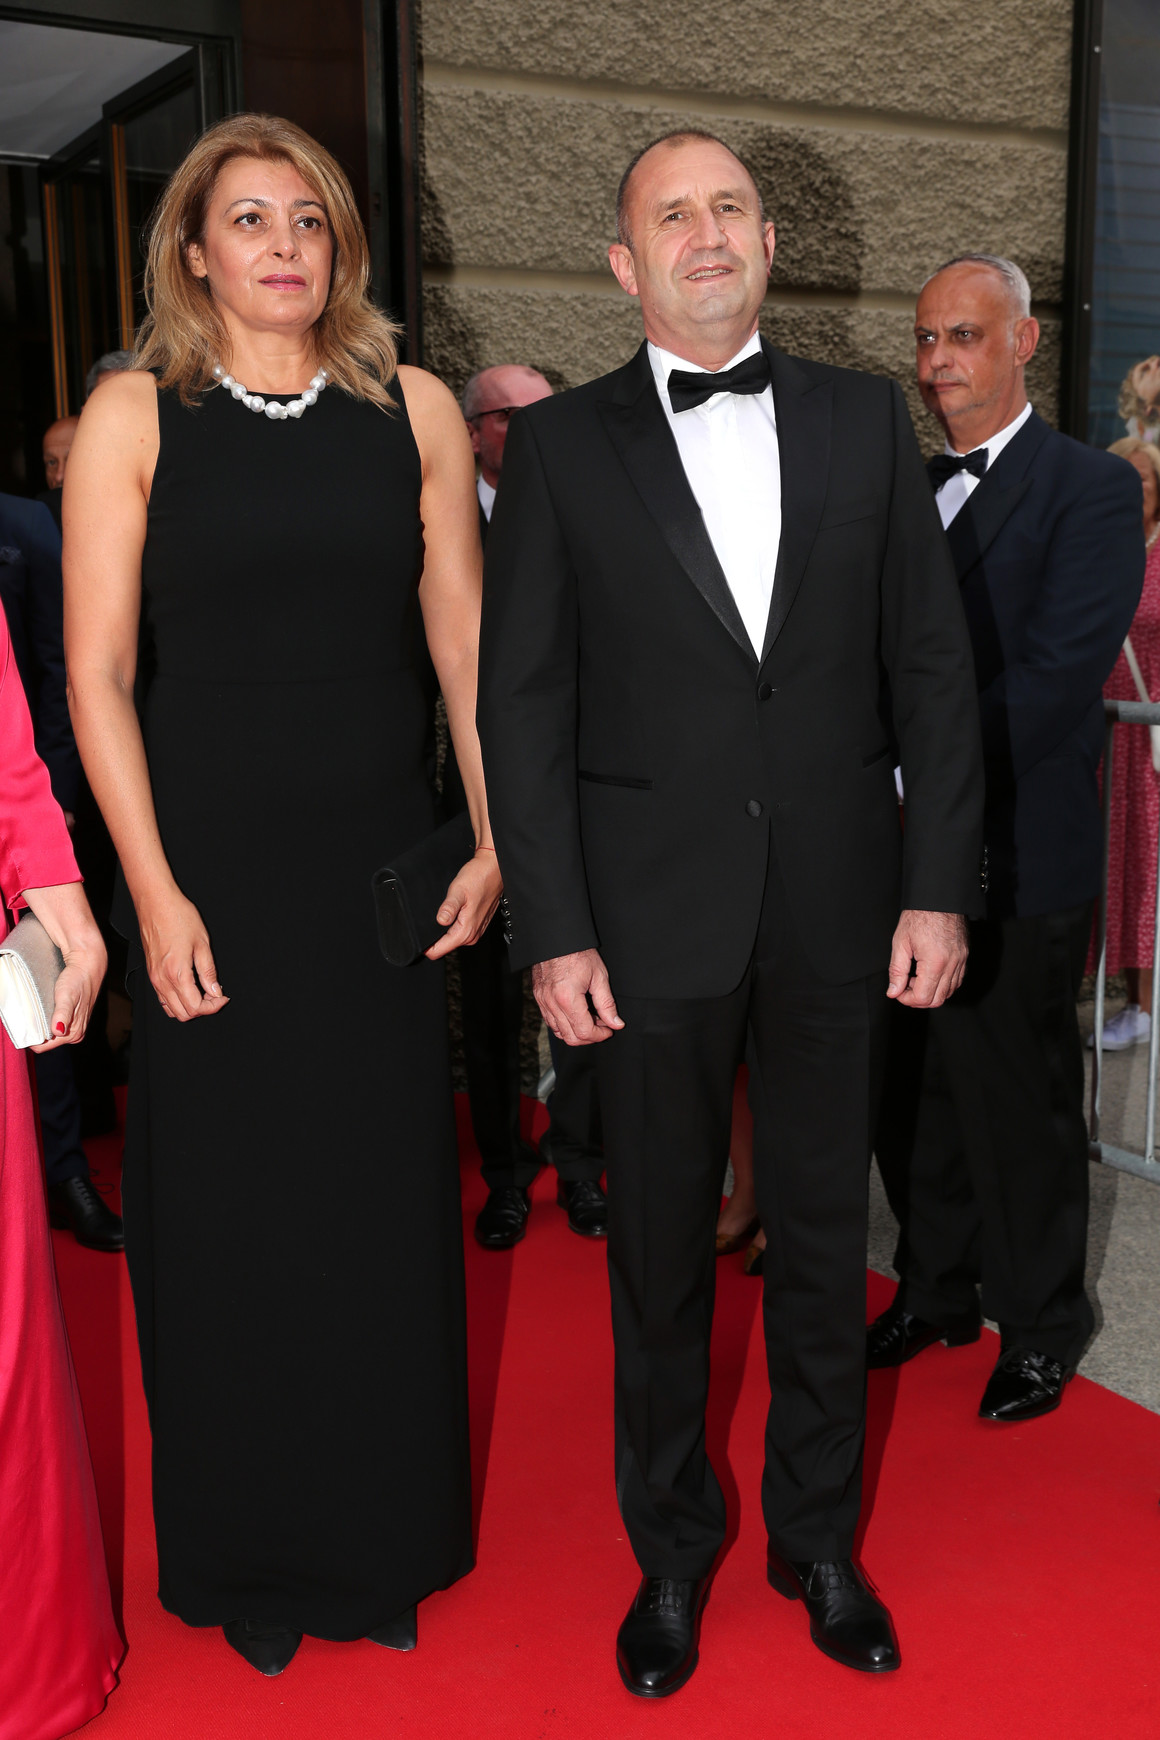 <p>Радева се появи с дълга черна рокля без ръкави, а българският президент – в черен смокинг с папийонка и бяла риза.</p>

<p> </p>
